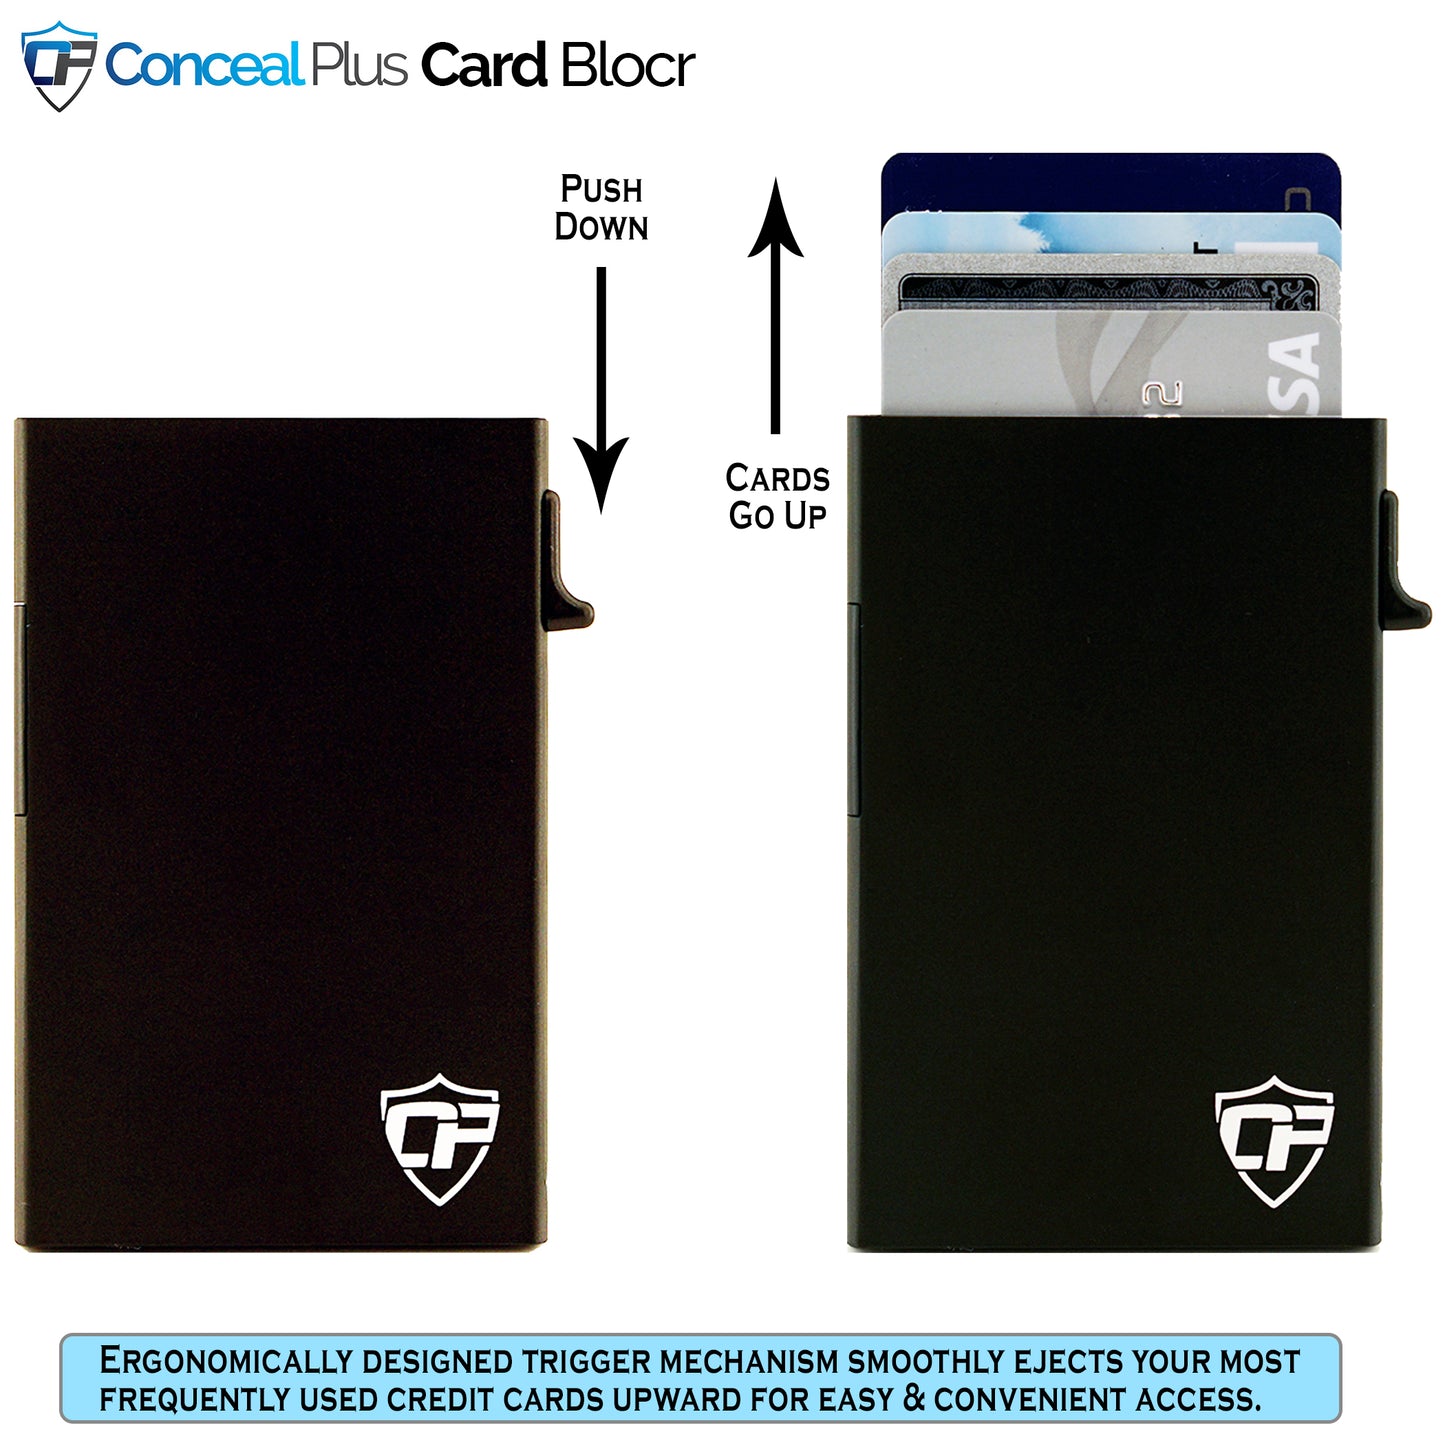 Card Blocr Credit Card Holder in Black